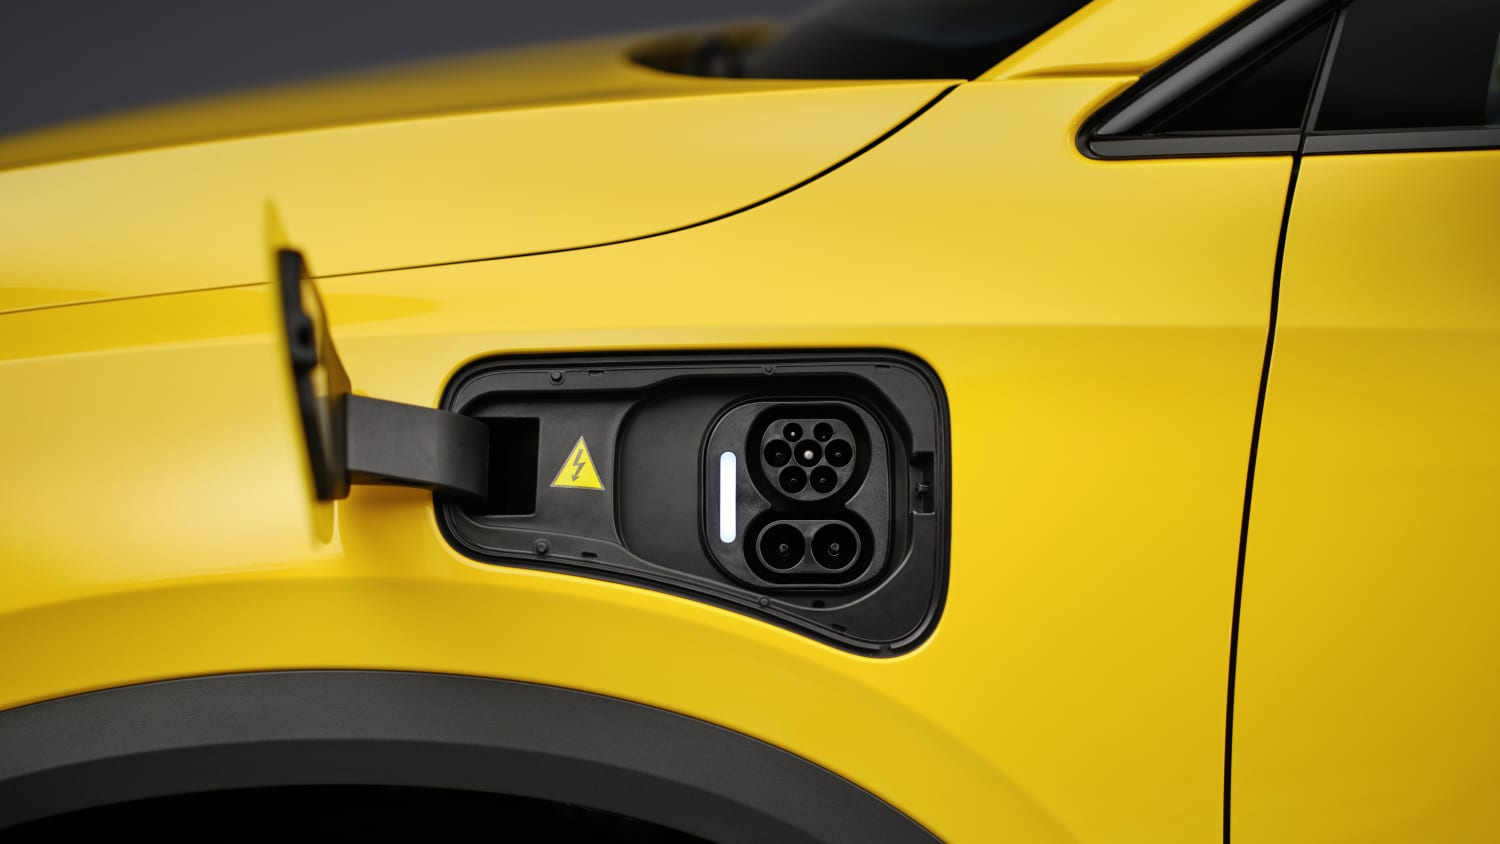 E-Auto Ladekabel: Welches ist das Richtige für mein Elektroauto